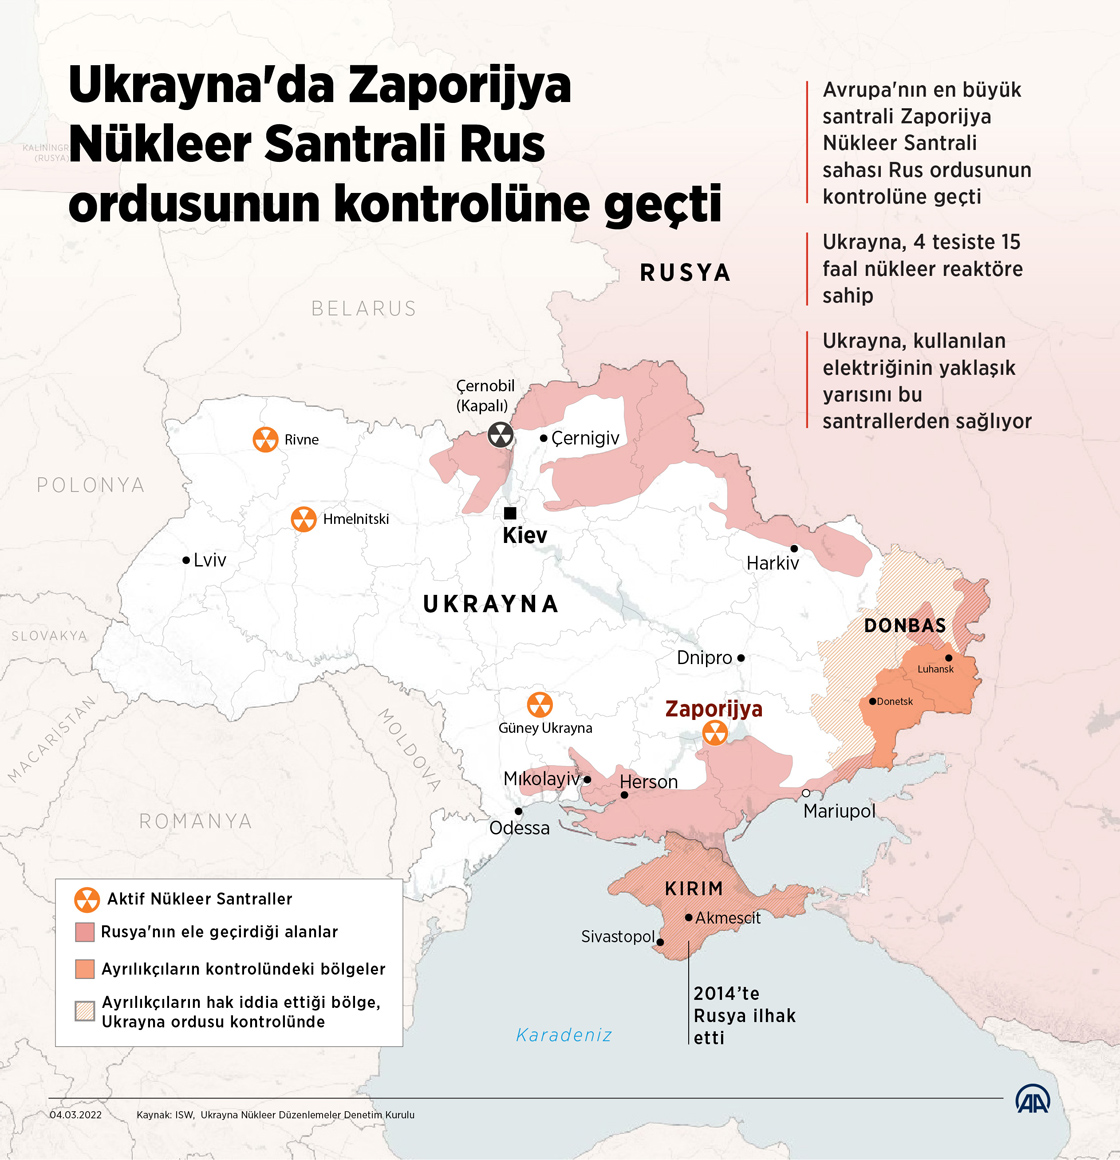 Ukrayna'da Zaporijya Nükleer Santrali Rus ordusunun kontrolüne geçti